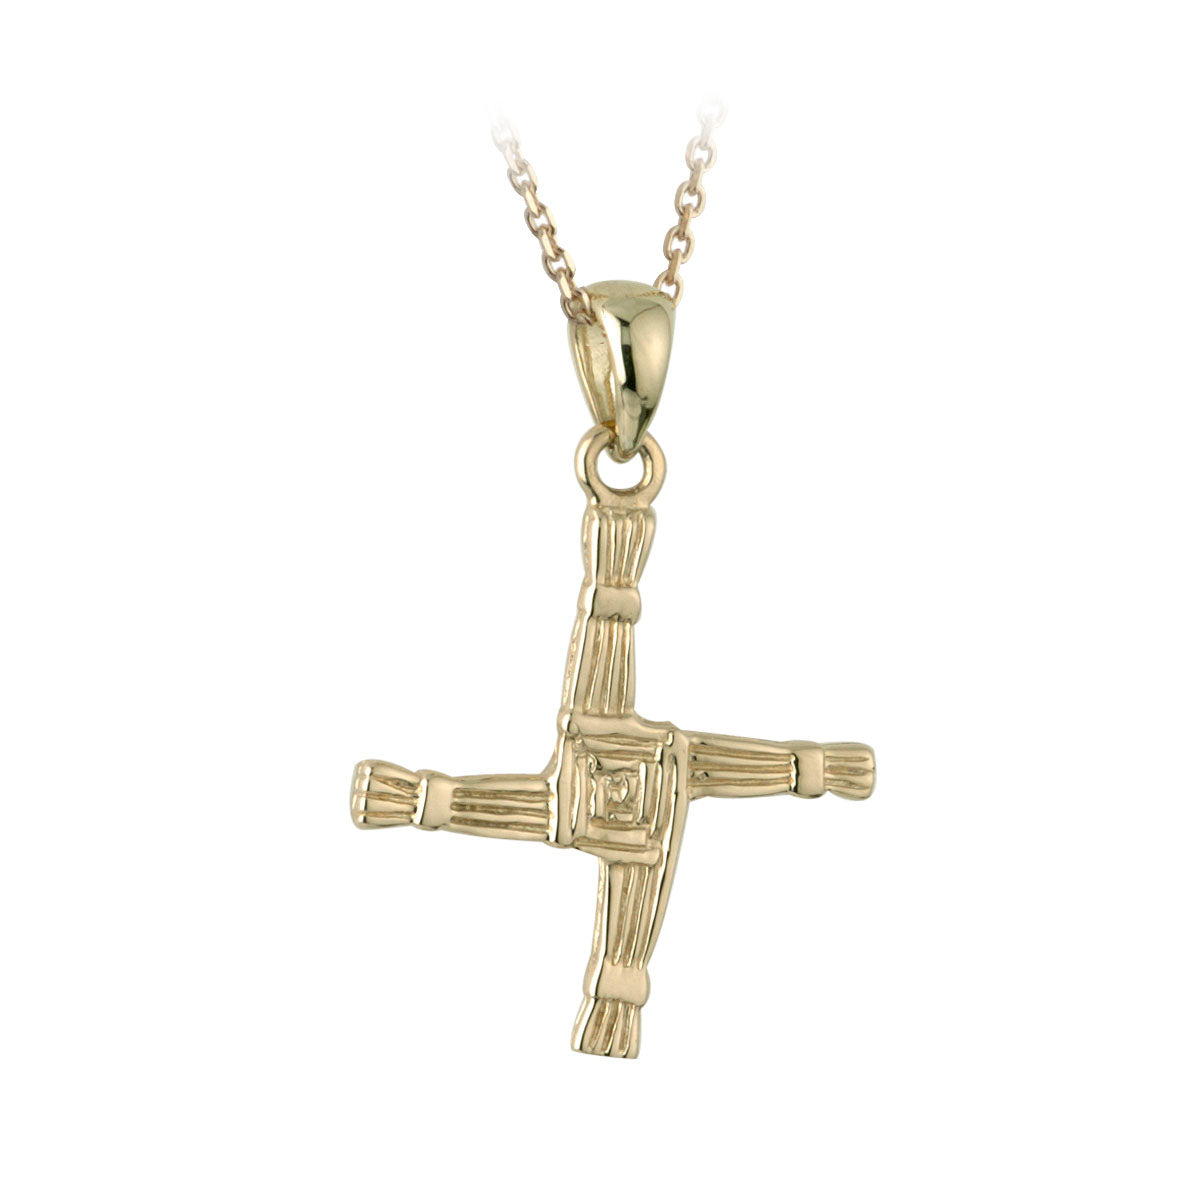 10k gold st brigids cross pendant s4279 from Solvar